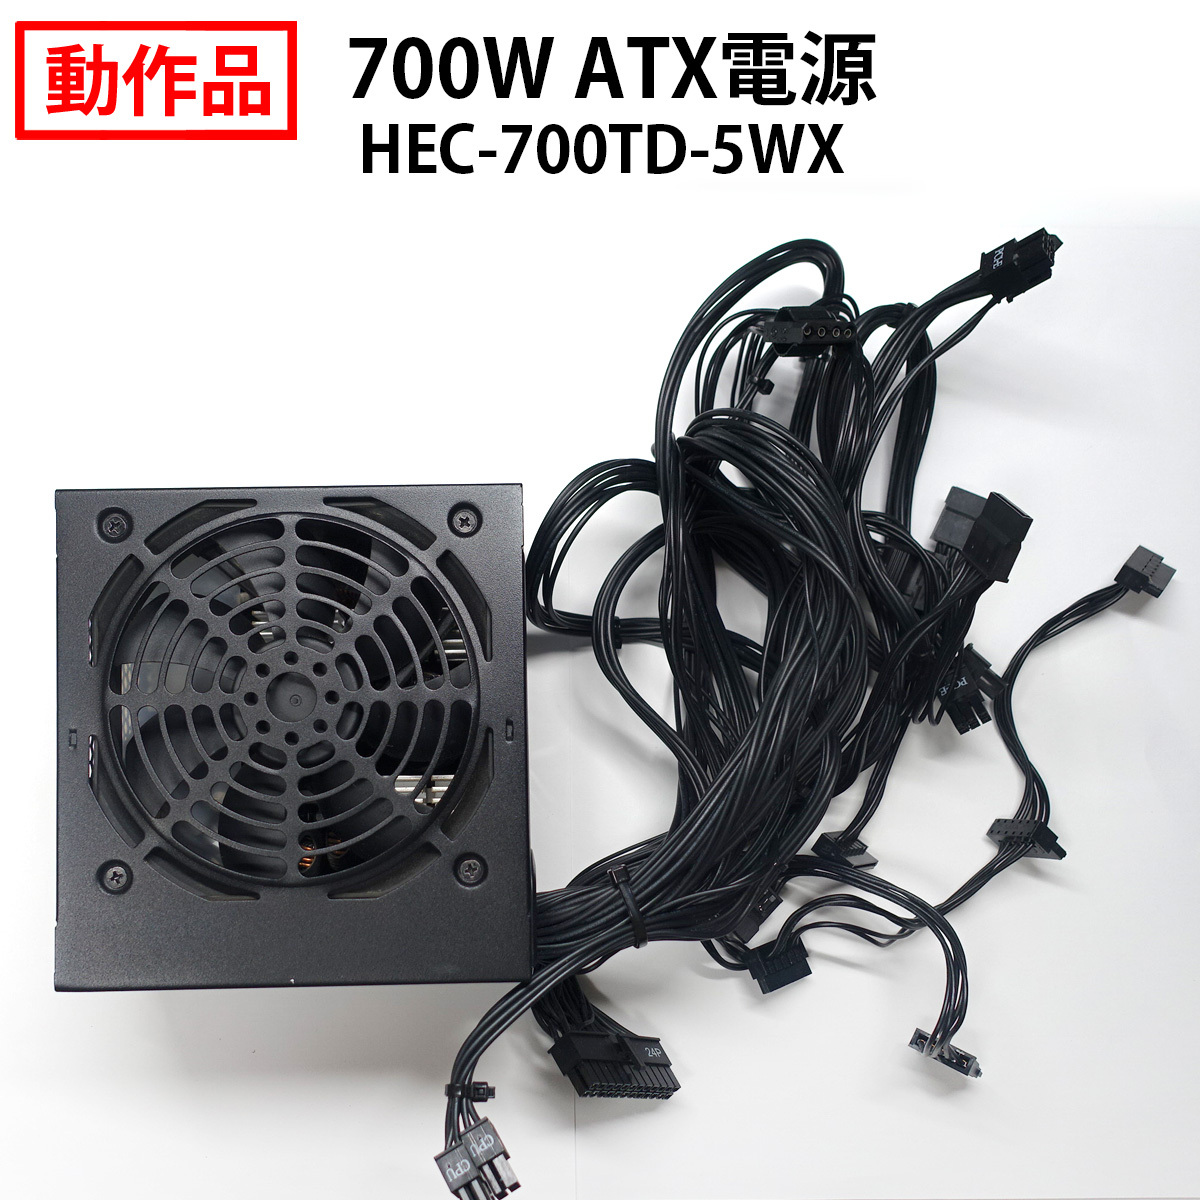 【送料無料】700W ATX電源 HEC-700TD-5WX 80PLUS BRONZE認証